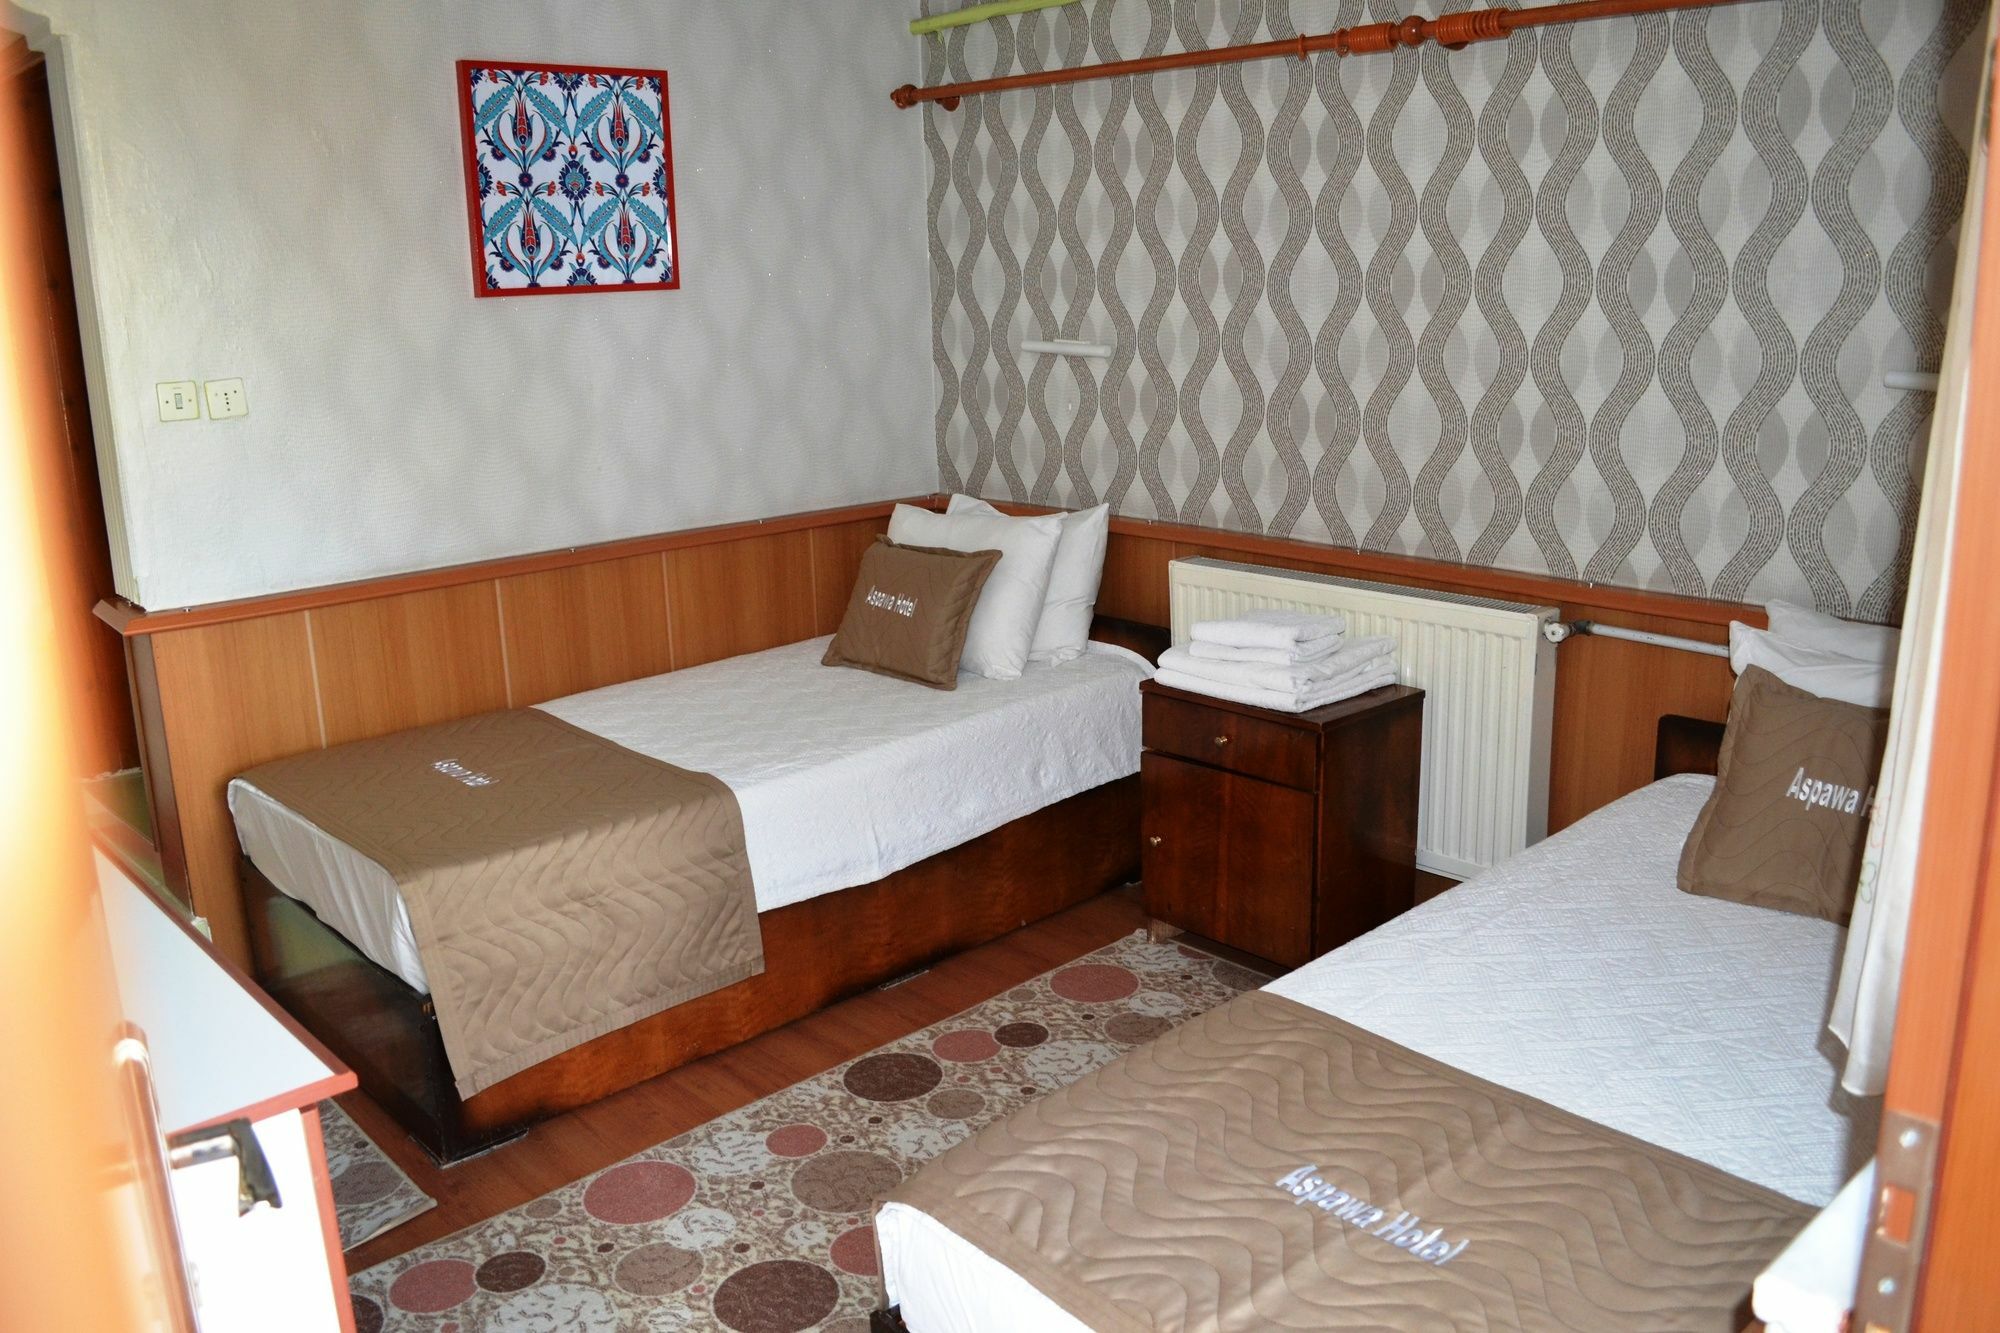 Aspawa Hotel Pamukkale Exteriör bild